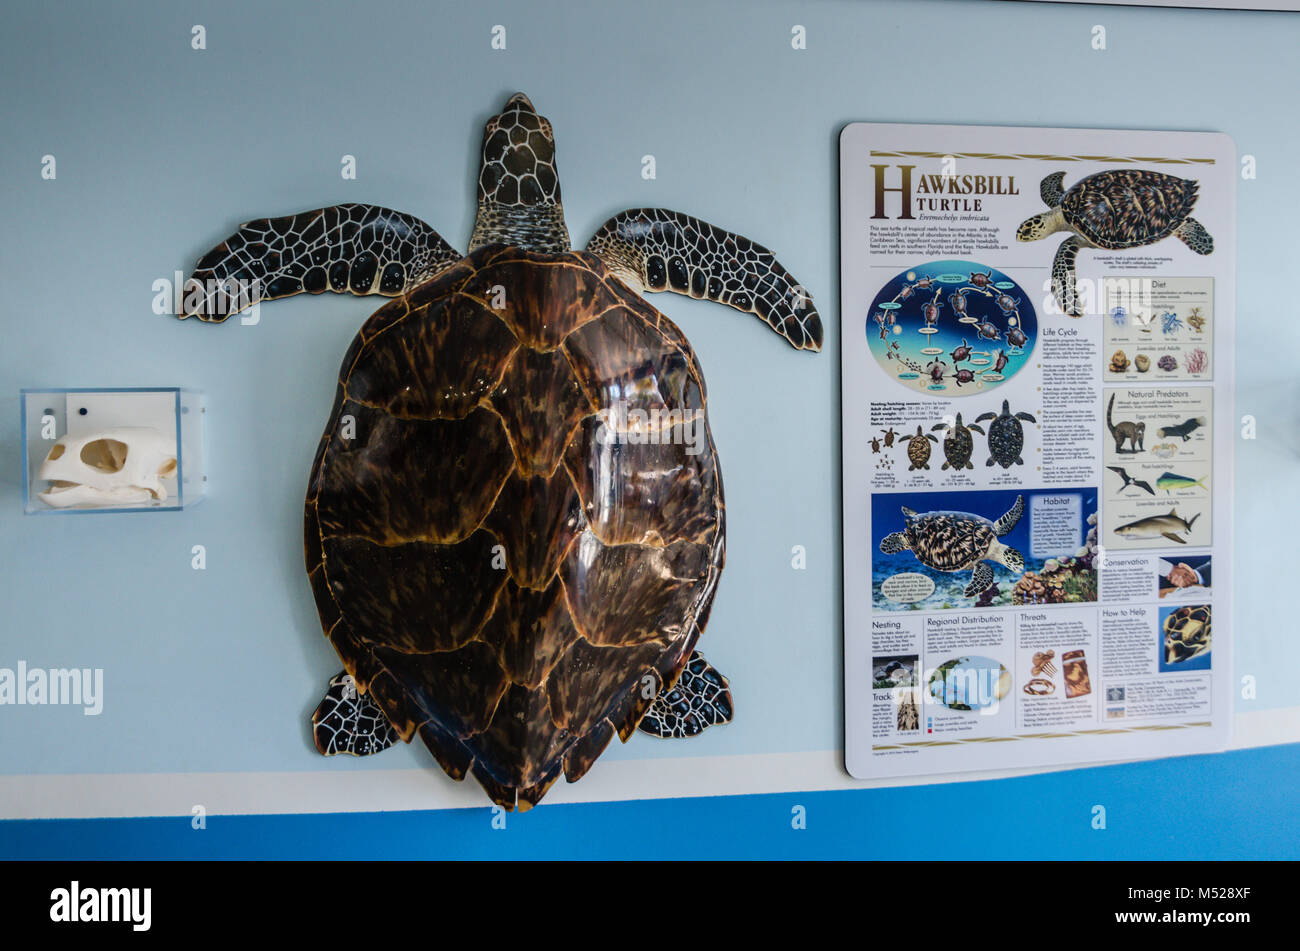 Poster et turtle shell avec tête de mort à l'hôpital des tortues, une petite organisation à but non lucratif dédiée à la réhabilitation des tortues marines menacées, Banque D'Images